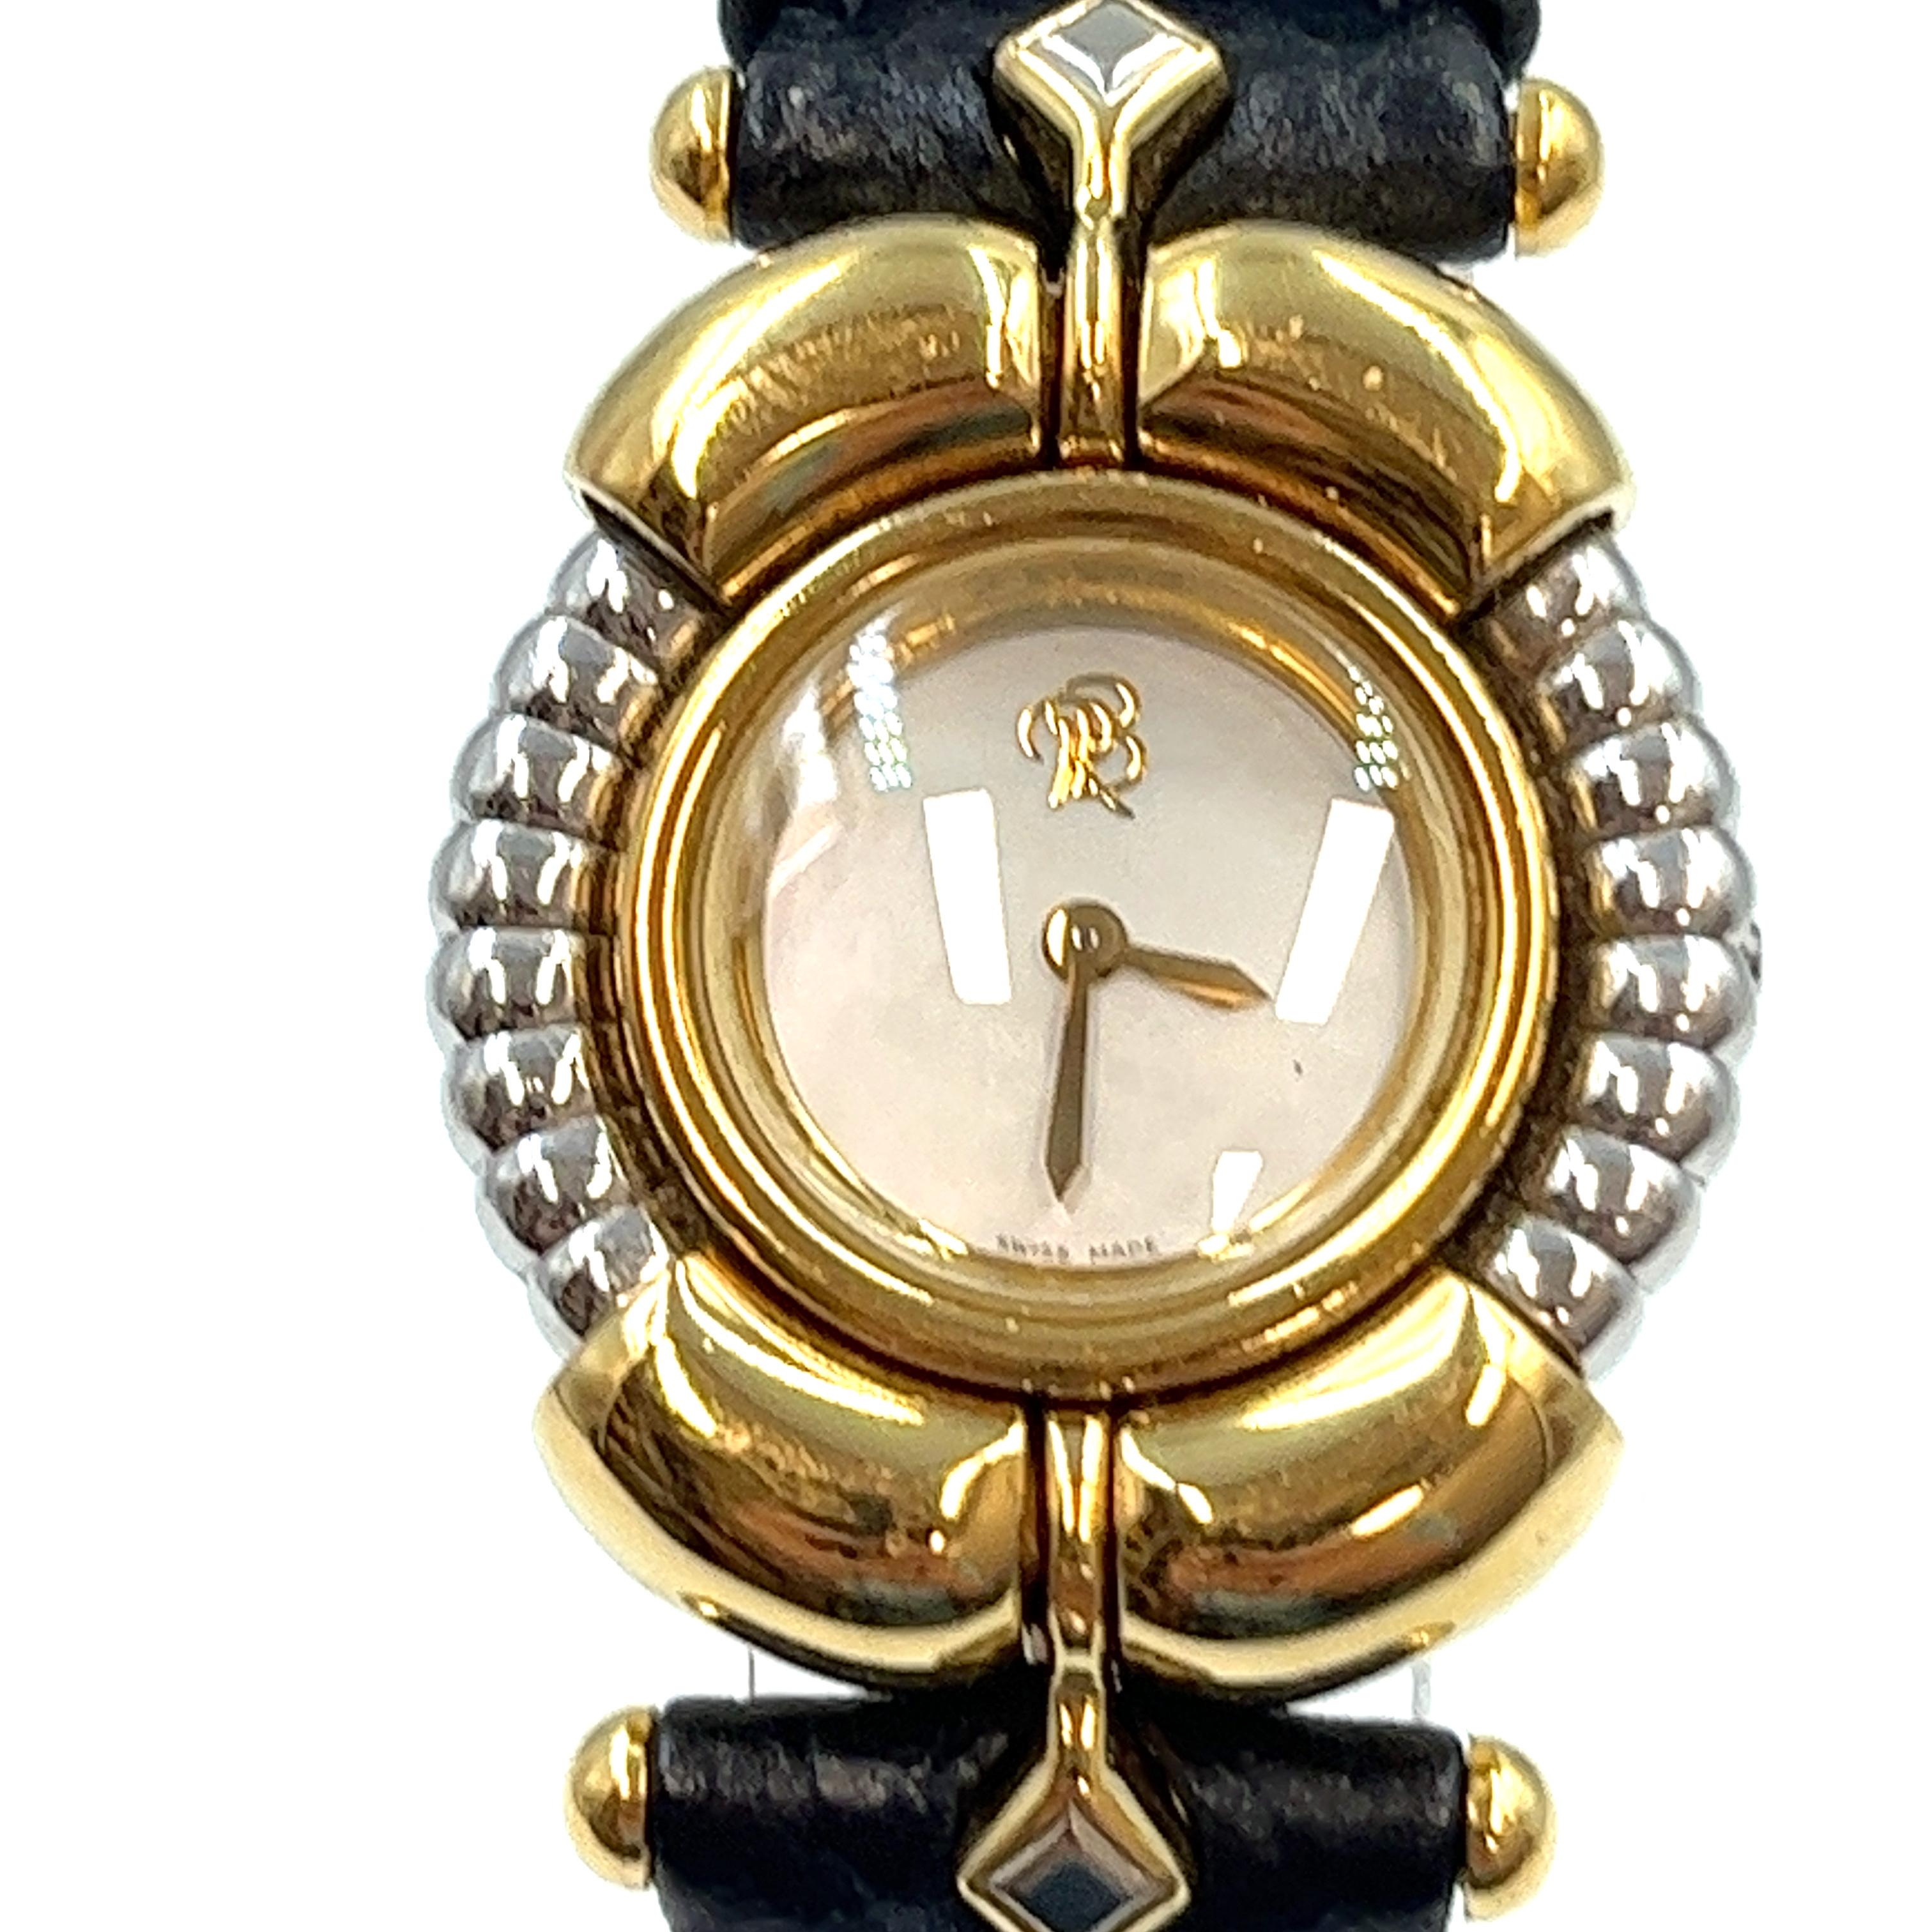 Vom französischen Schmuckdesigner Rene Boivin stammt diese einzigartige Chrysalis-Damenuhr im Art-Deco-Stil aus zweiter Hand. 
Das kunstvolle Gehäuse ist aus 18 Karat Gelbgold mit beweglicher Lünette gefertigt. 
Champagnerfarbenes Zifferblatt mit